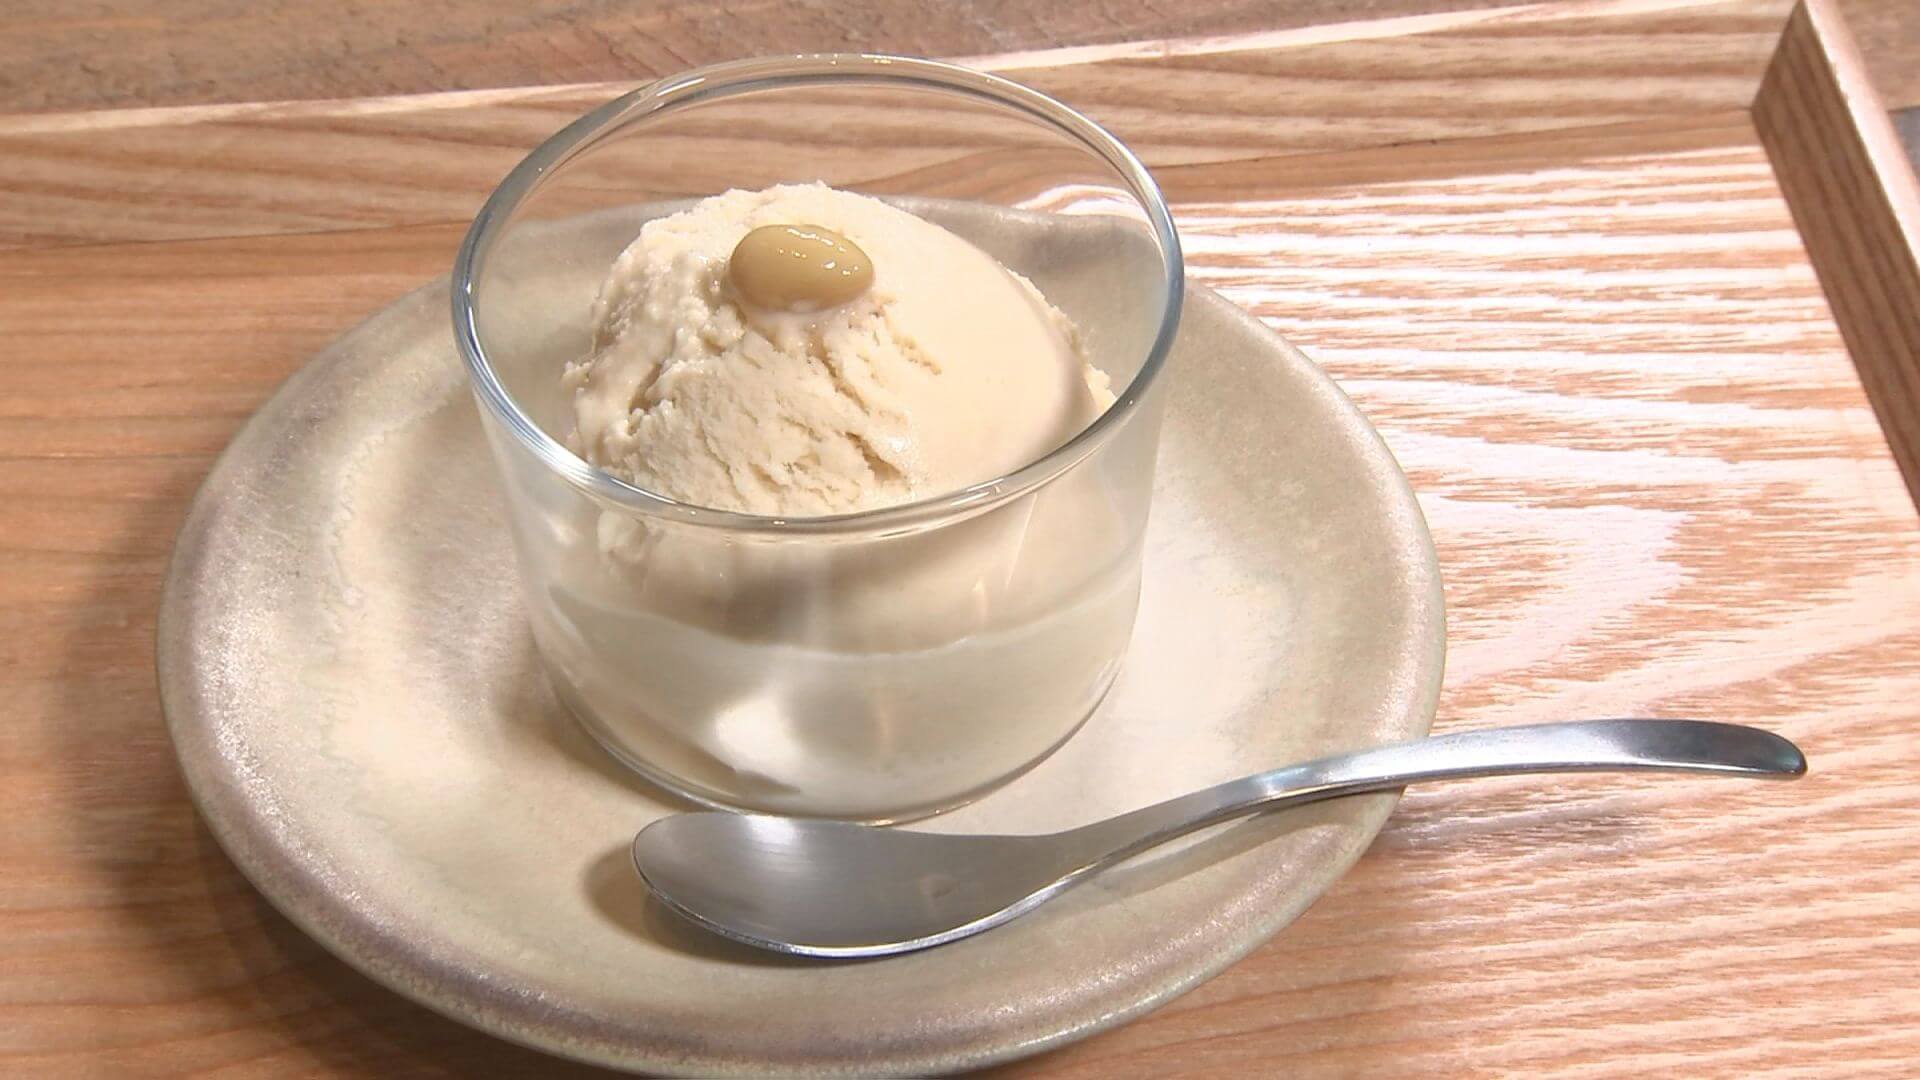 久慈さんが実食したのは香り豆という大豆を使ったアイス 食べたことがないほどきな粉が濃厚とのこと